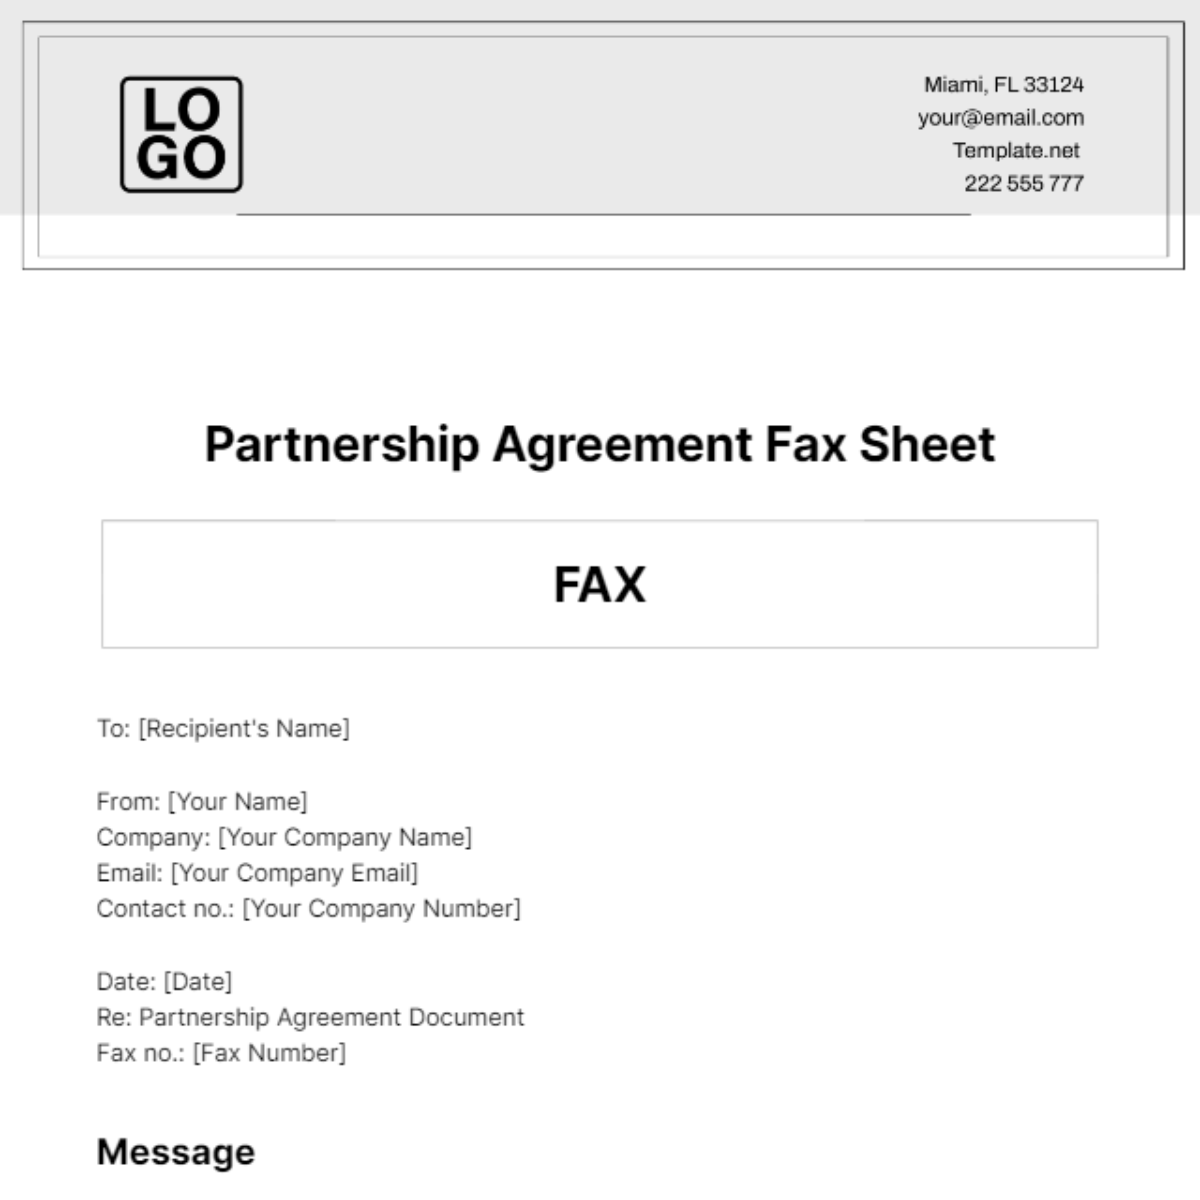 Partnership Agreement Fax Sheet Template